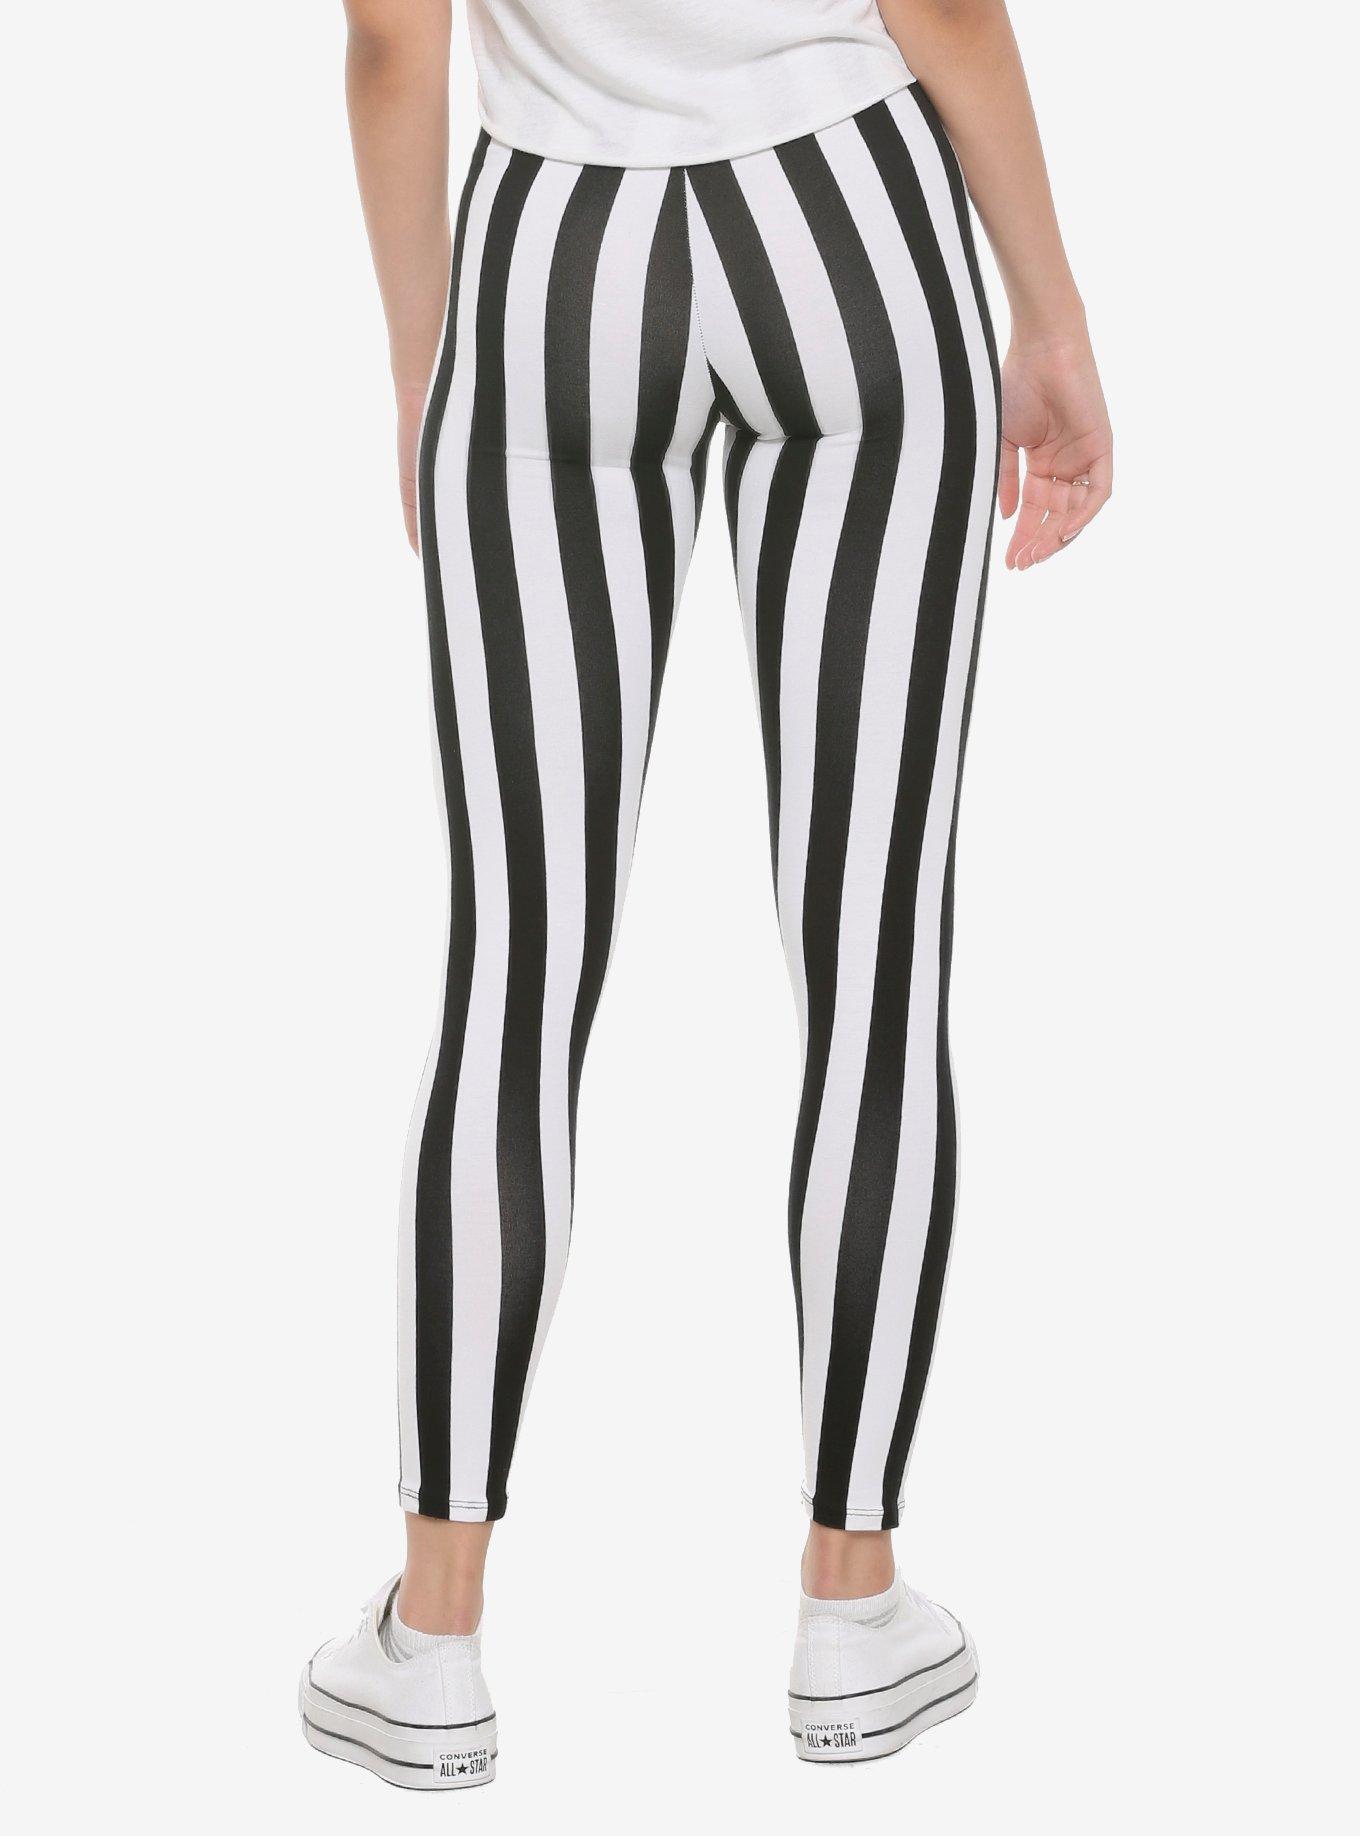 Black & White Vertical Striped Leggings, BLACK  WHITE, alternate